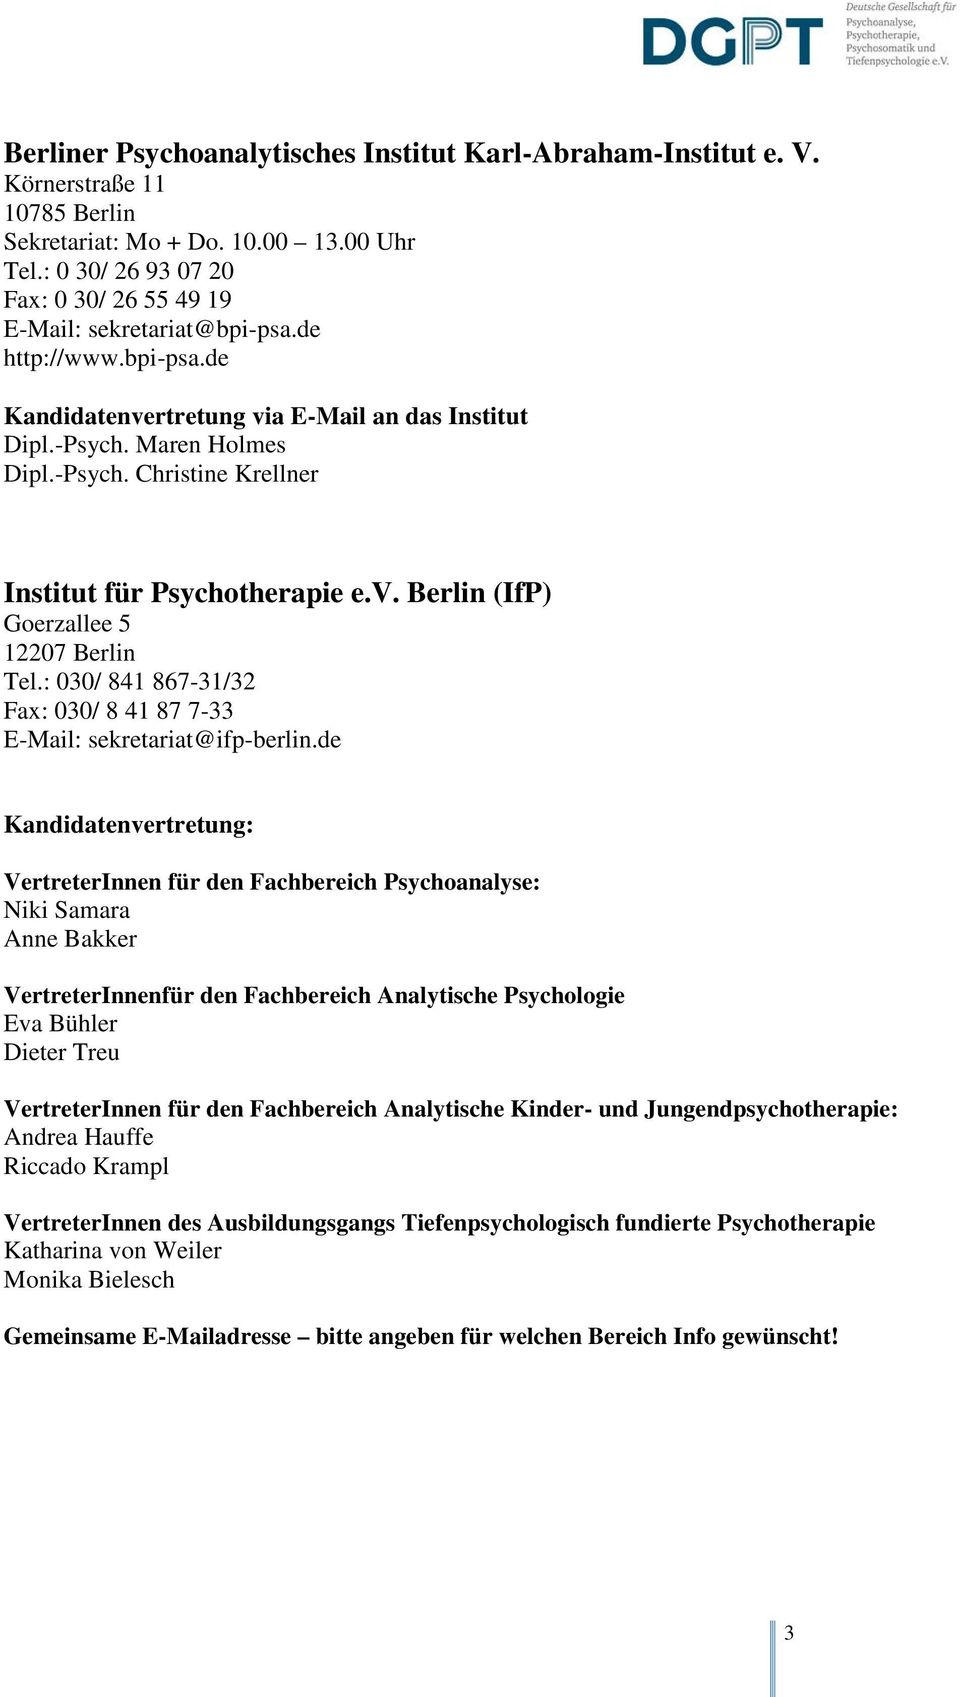 Berlin (IfP) Goerzallee 5 12207 Berlin Tel.: 030/ 841 867-31/32 Fax: 030/ 8 41 87 7-33 E-Mail: sekretariat@ifp-berlin.